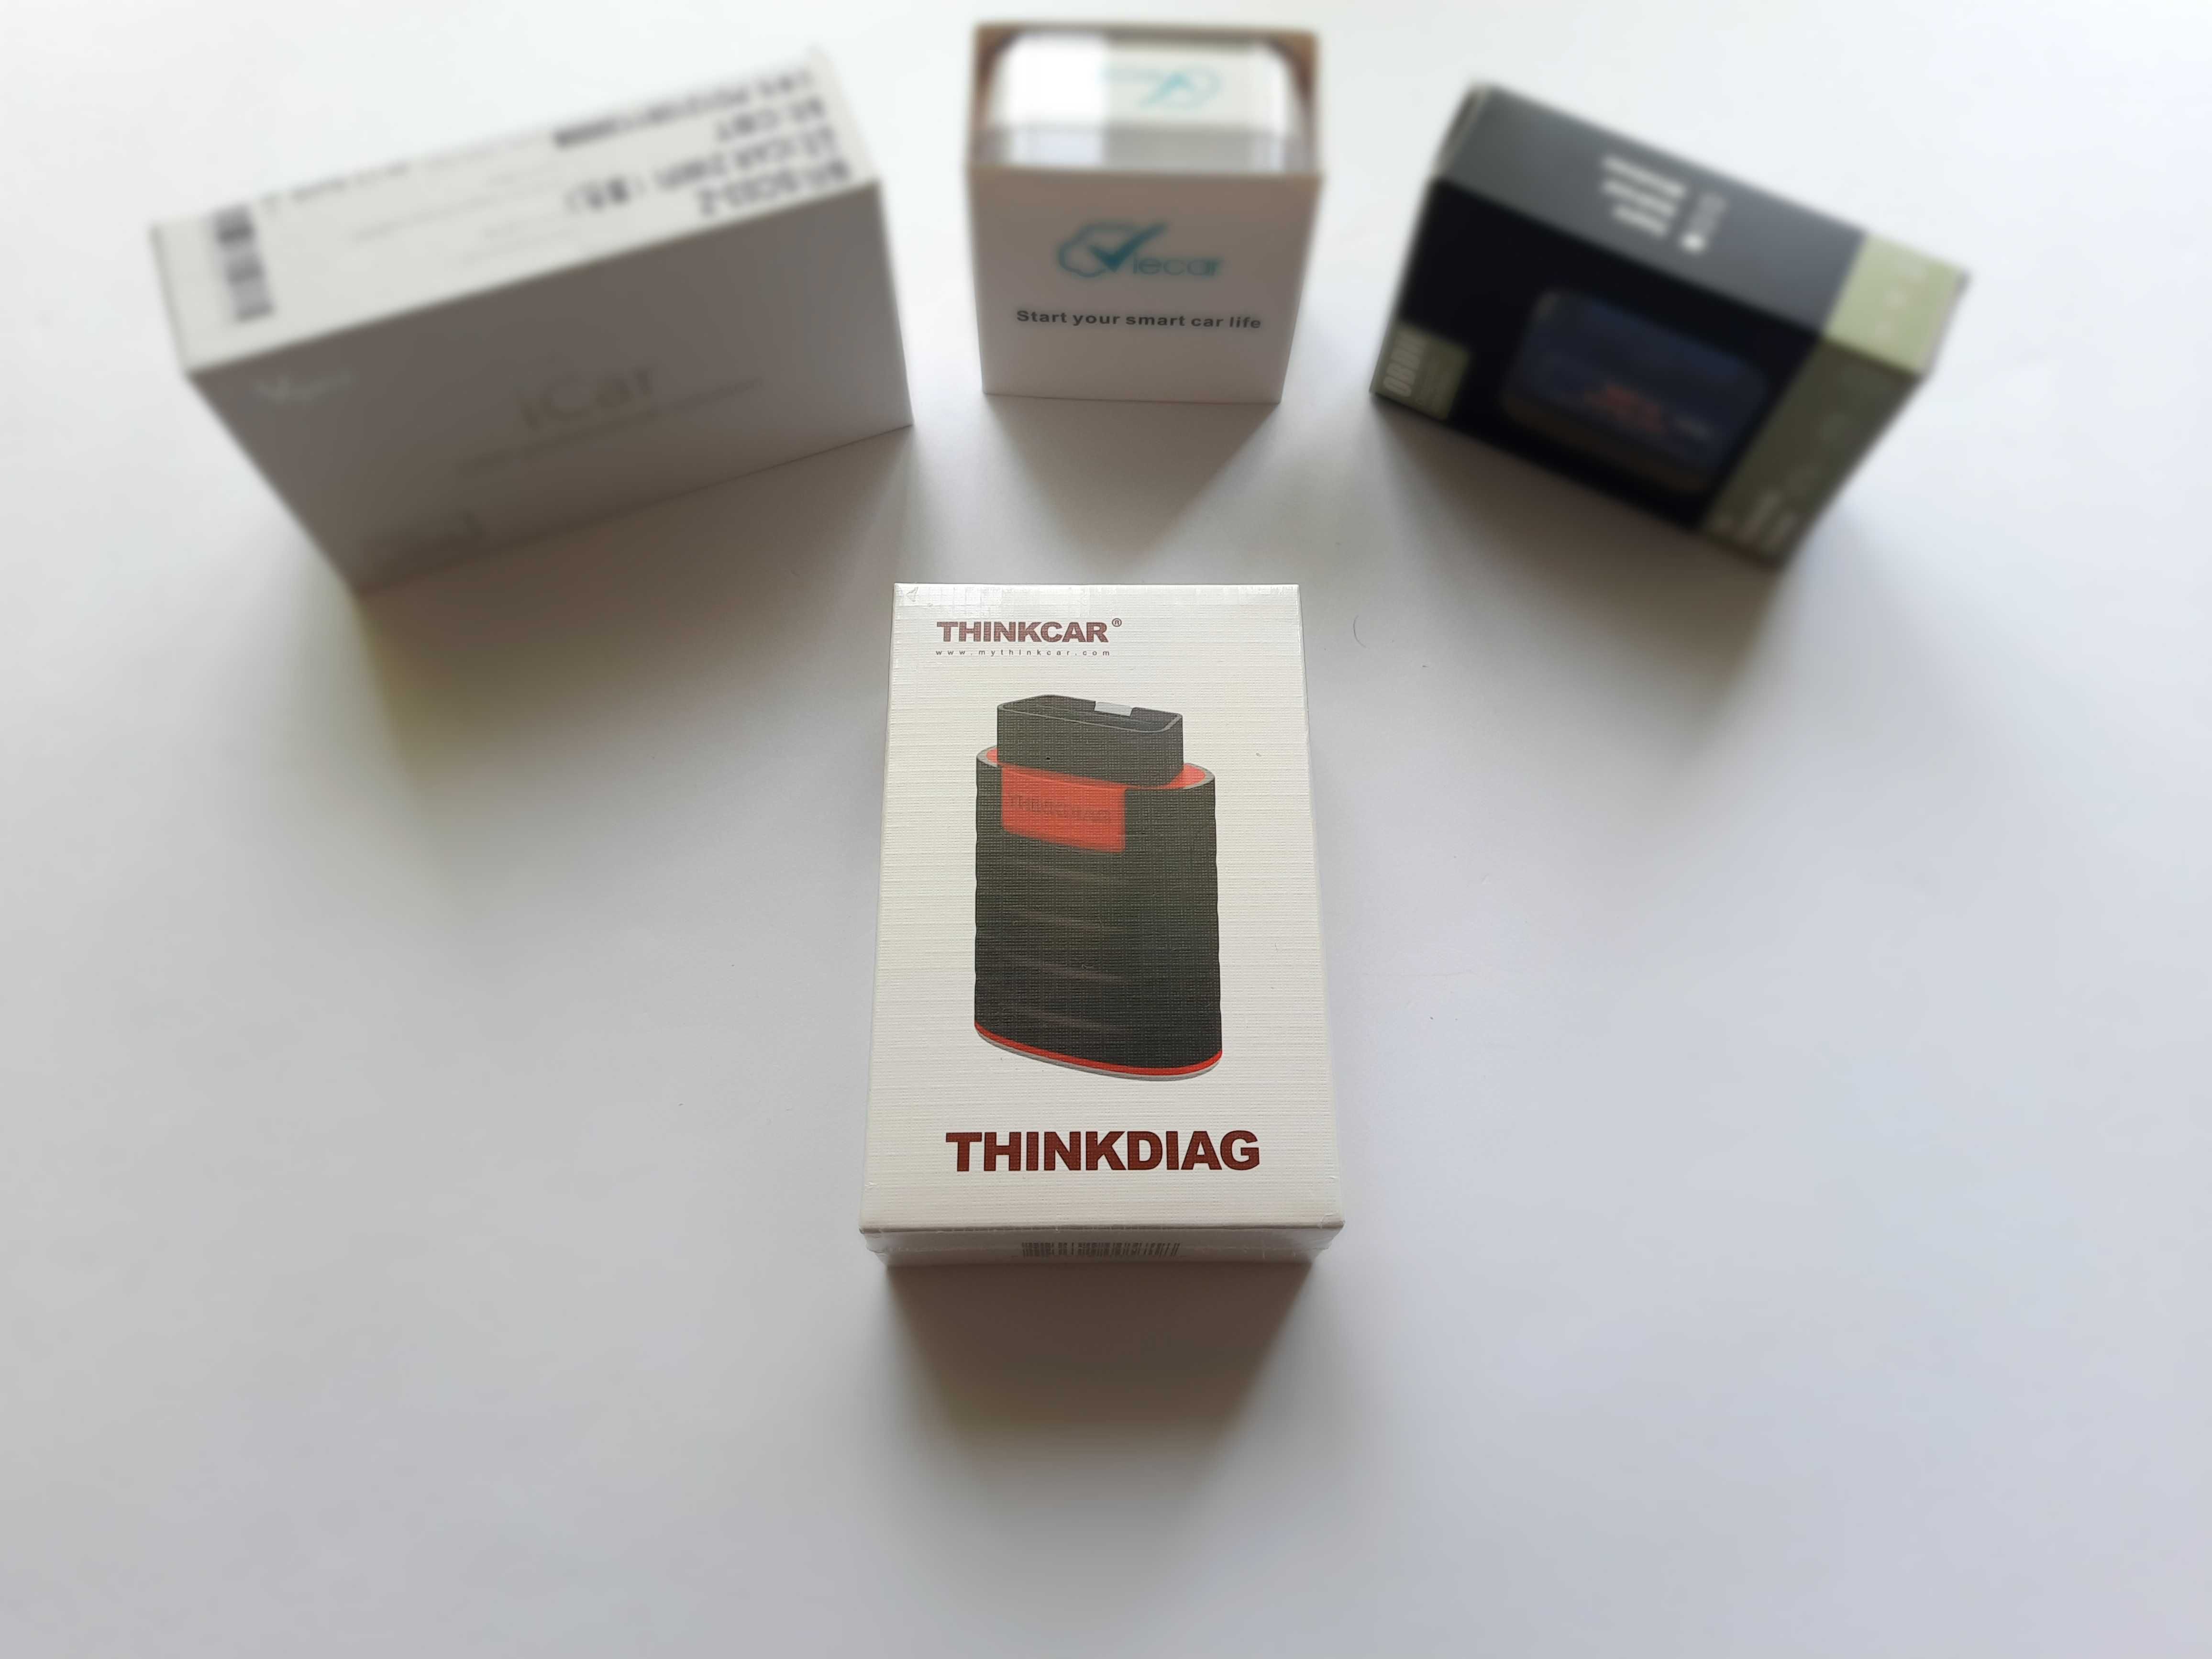 Готовий комплект! Автосканер ThinkDiag +Планшет! /Diagzone опція